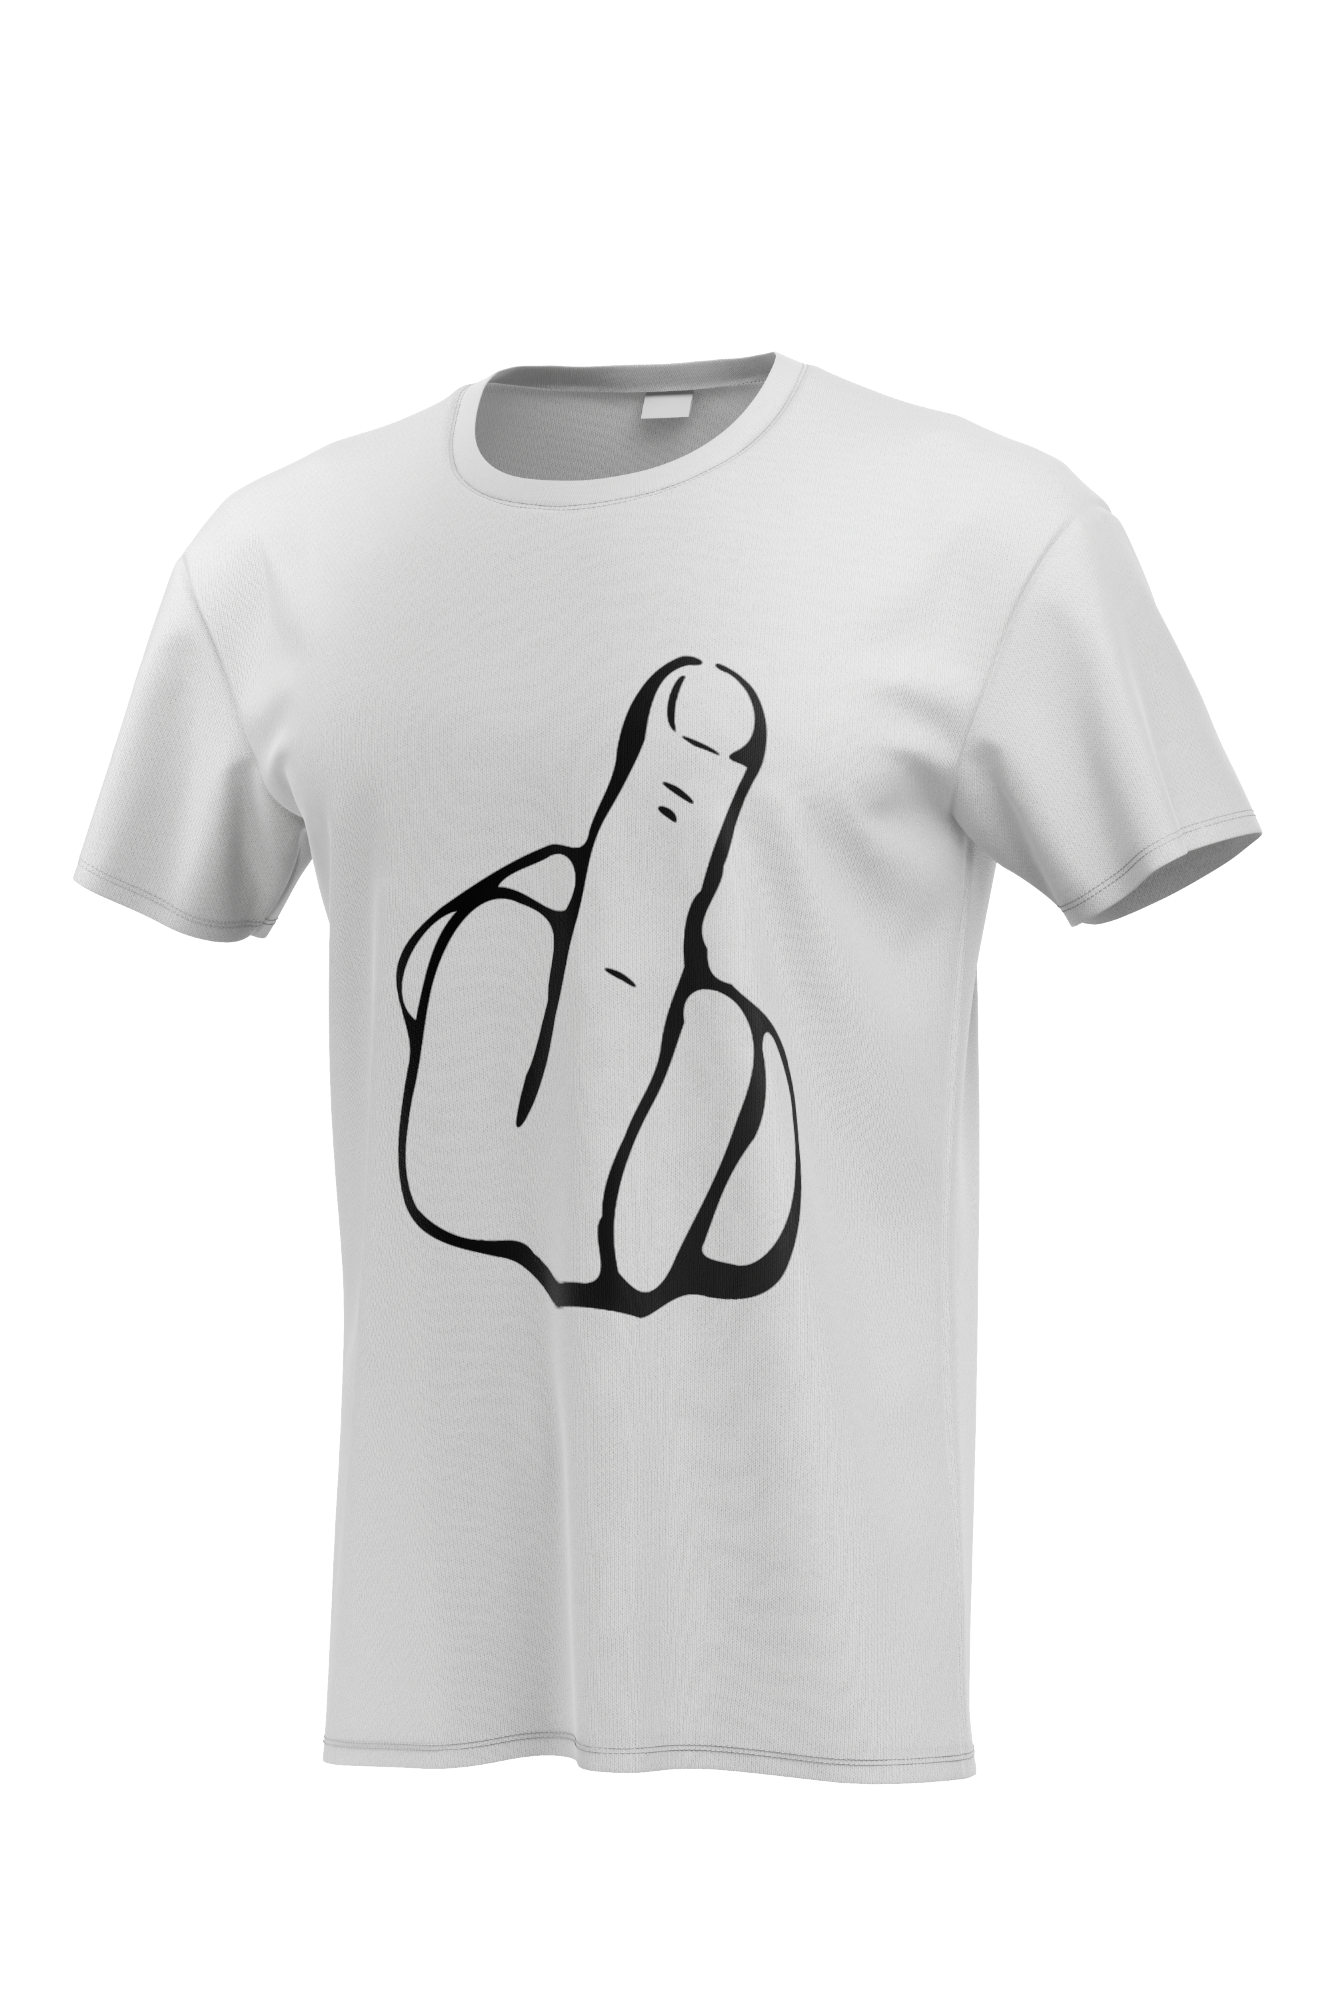 Camiseta blanca con dedo de la mano